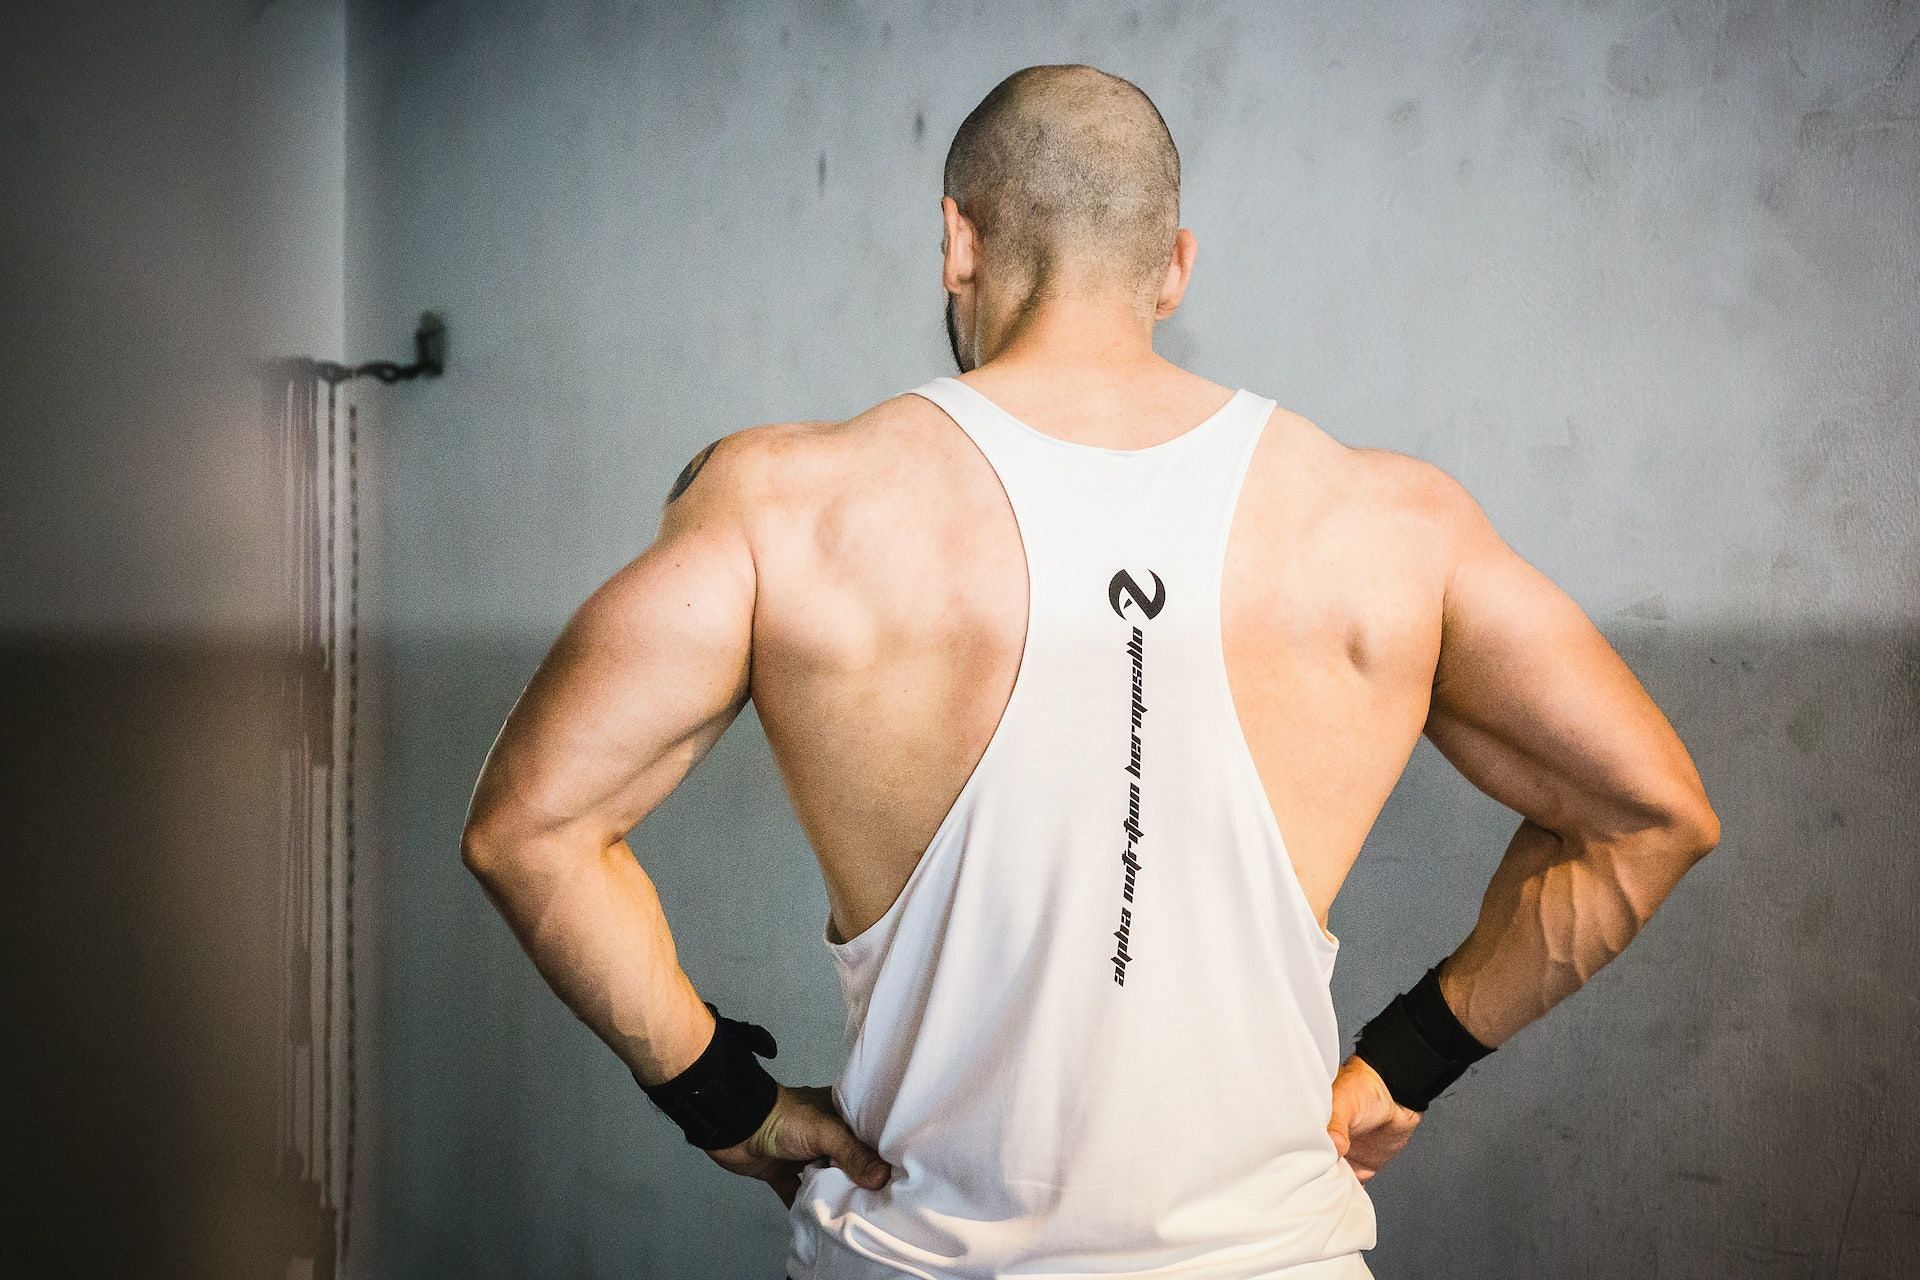 A set of well-built shoulders enhnace your physique. (Photo via Pexels/Mario Valenzuela)